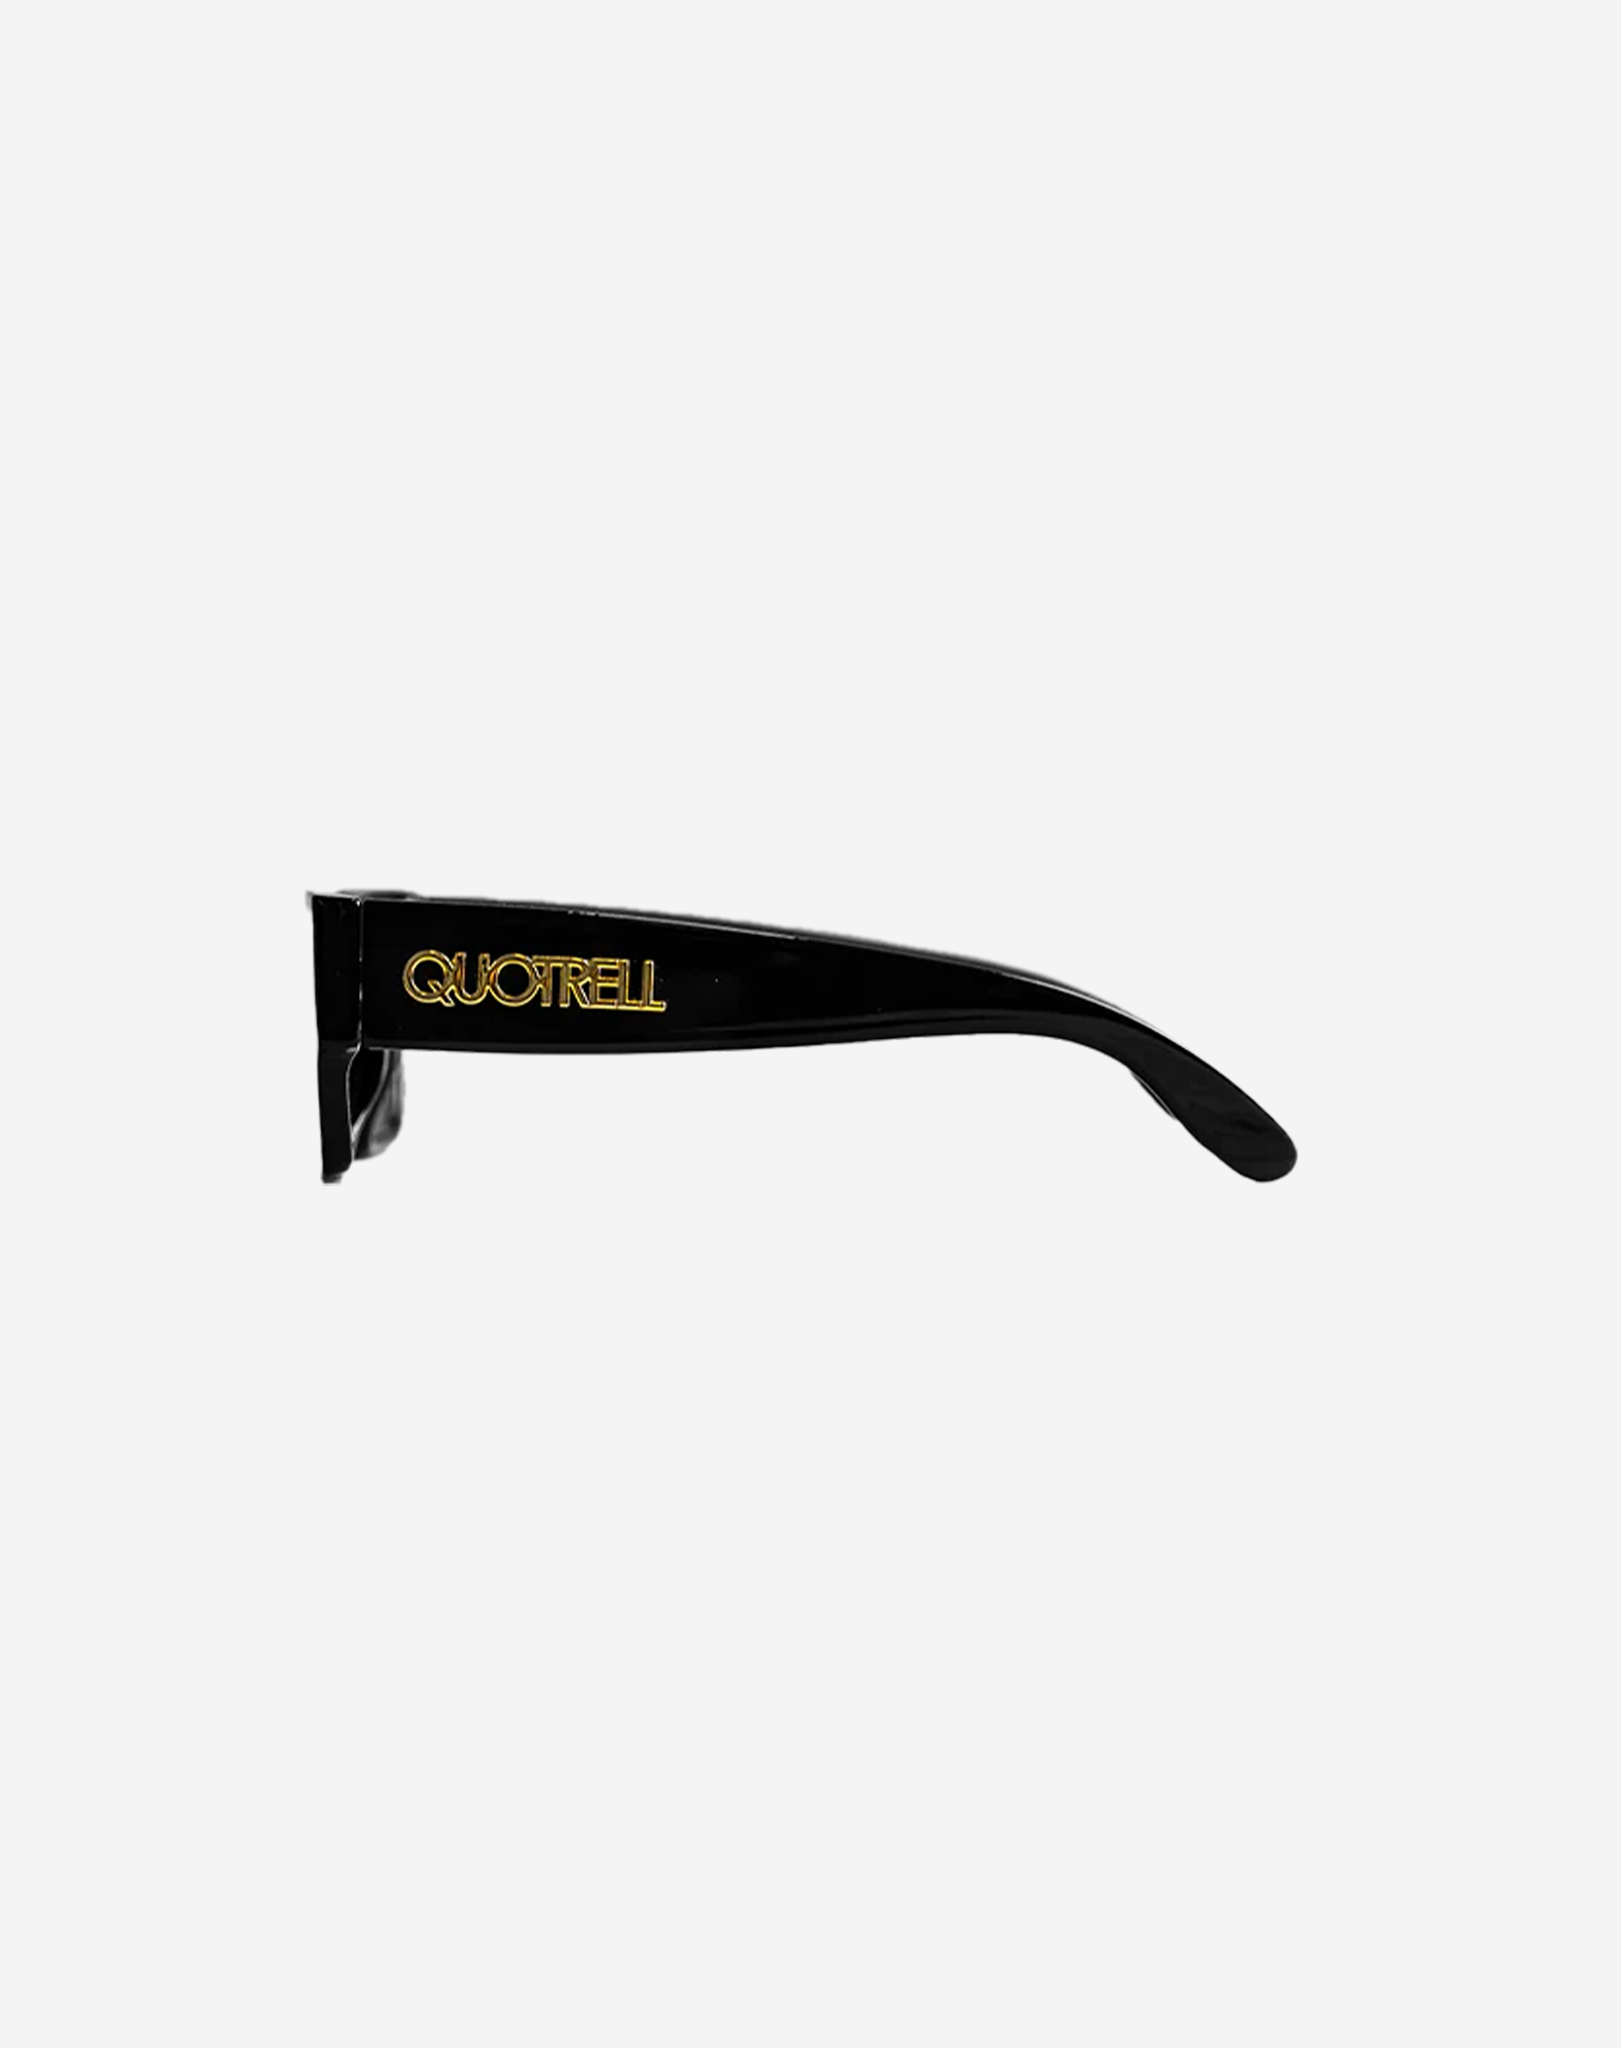 Quotrell Sunglasses Zwart - Goud